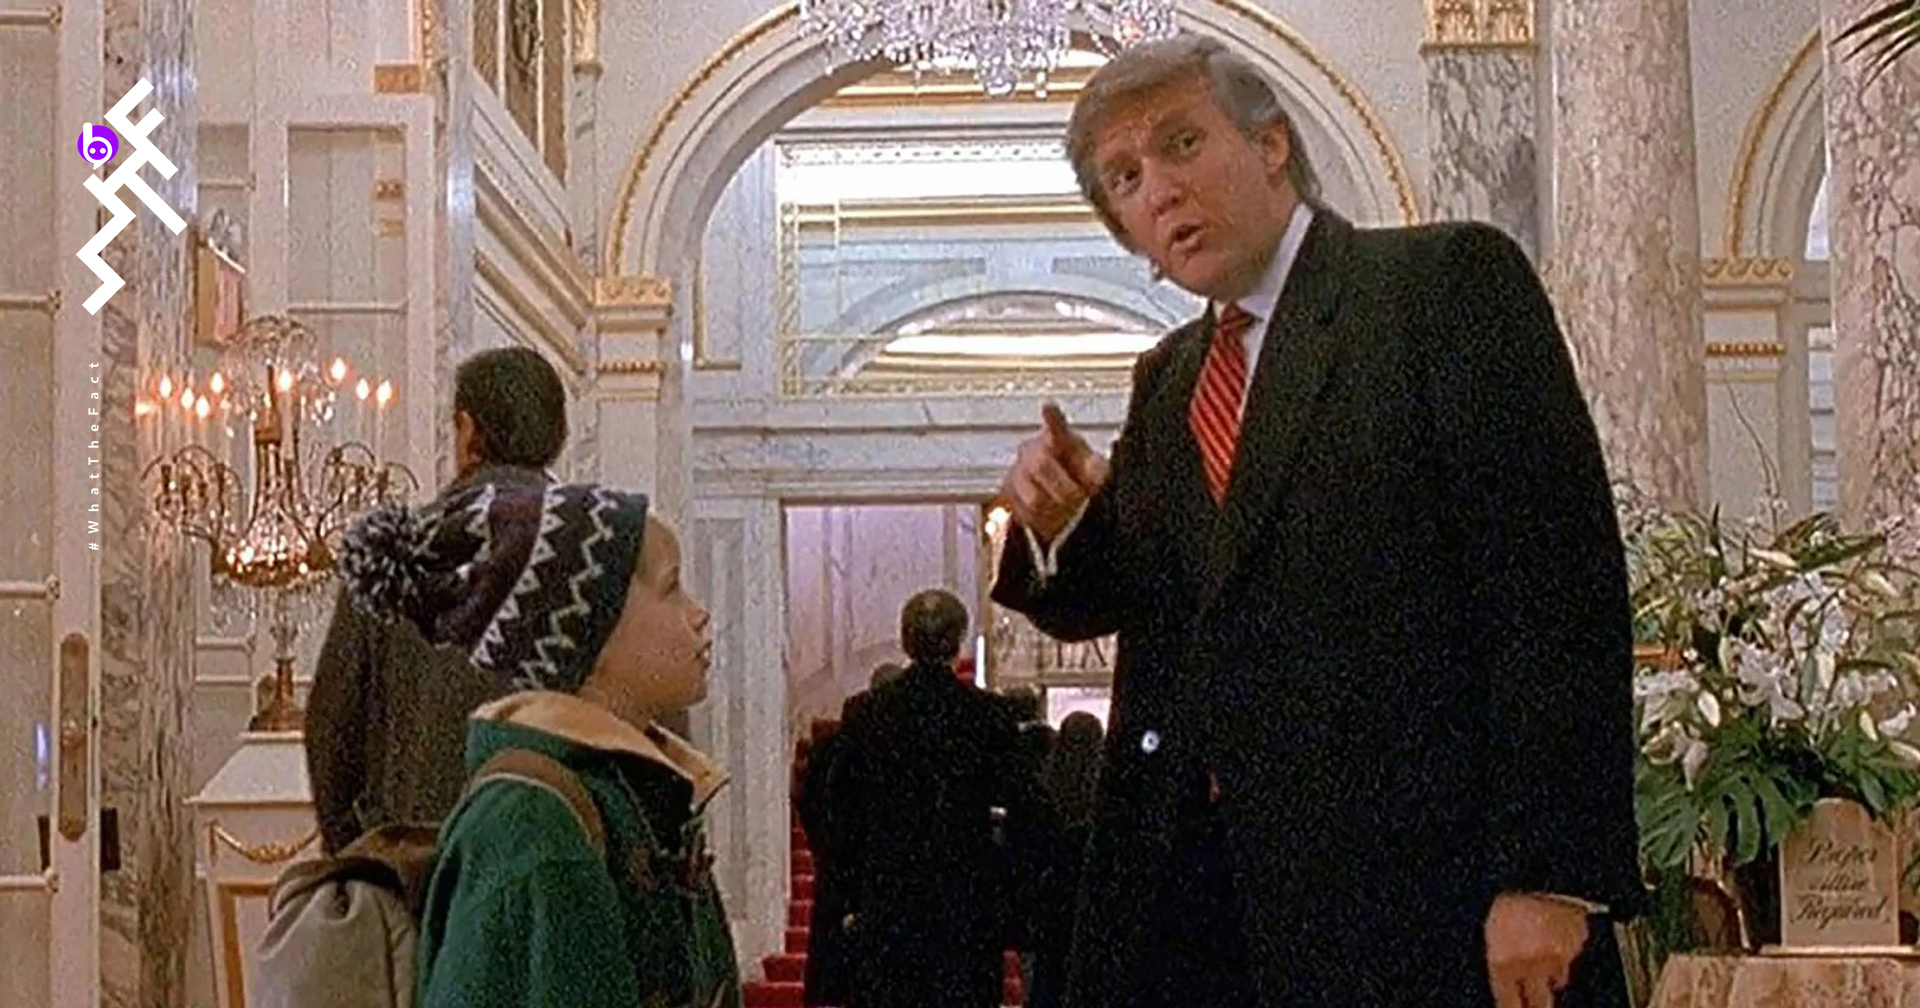 Macaulay Culkin เจ้าหนู Home Alone ก็อยากลบฉากของ Donald Trump ออกจากหนังภาค 2